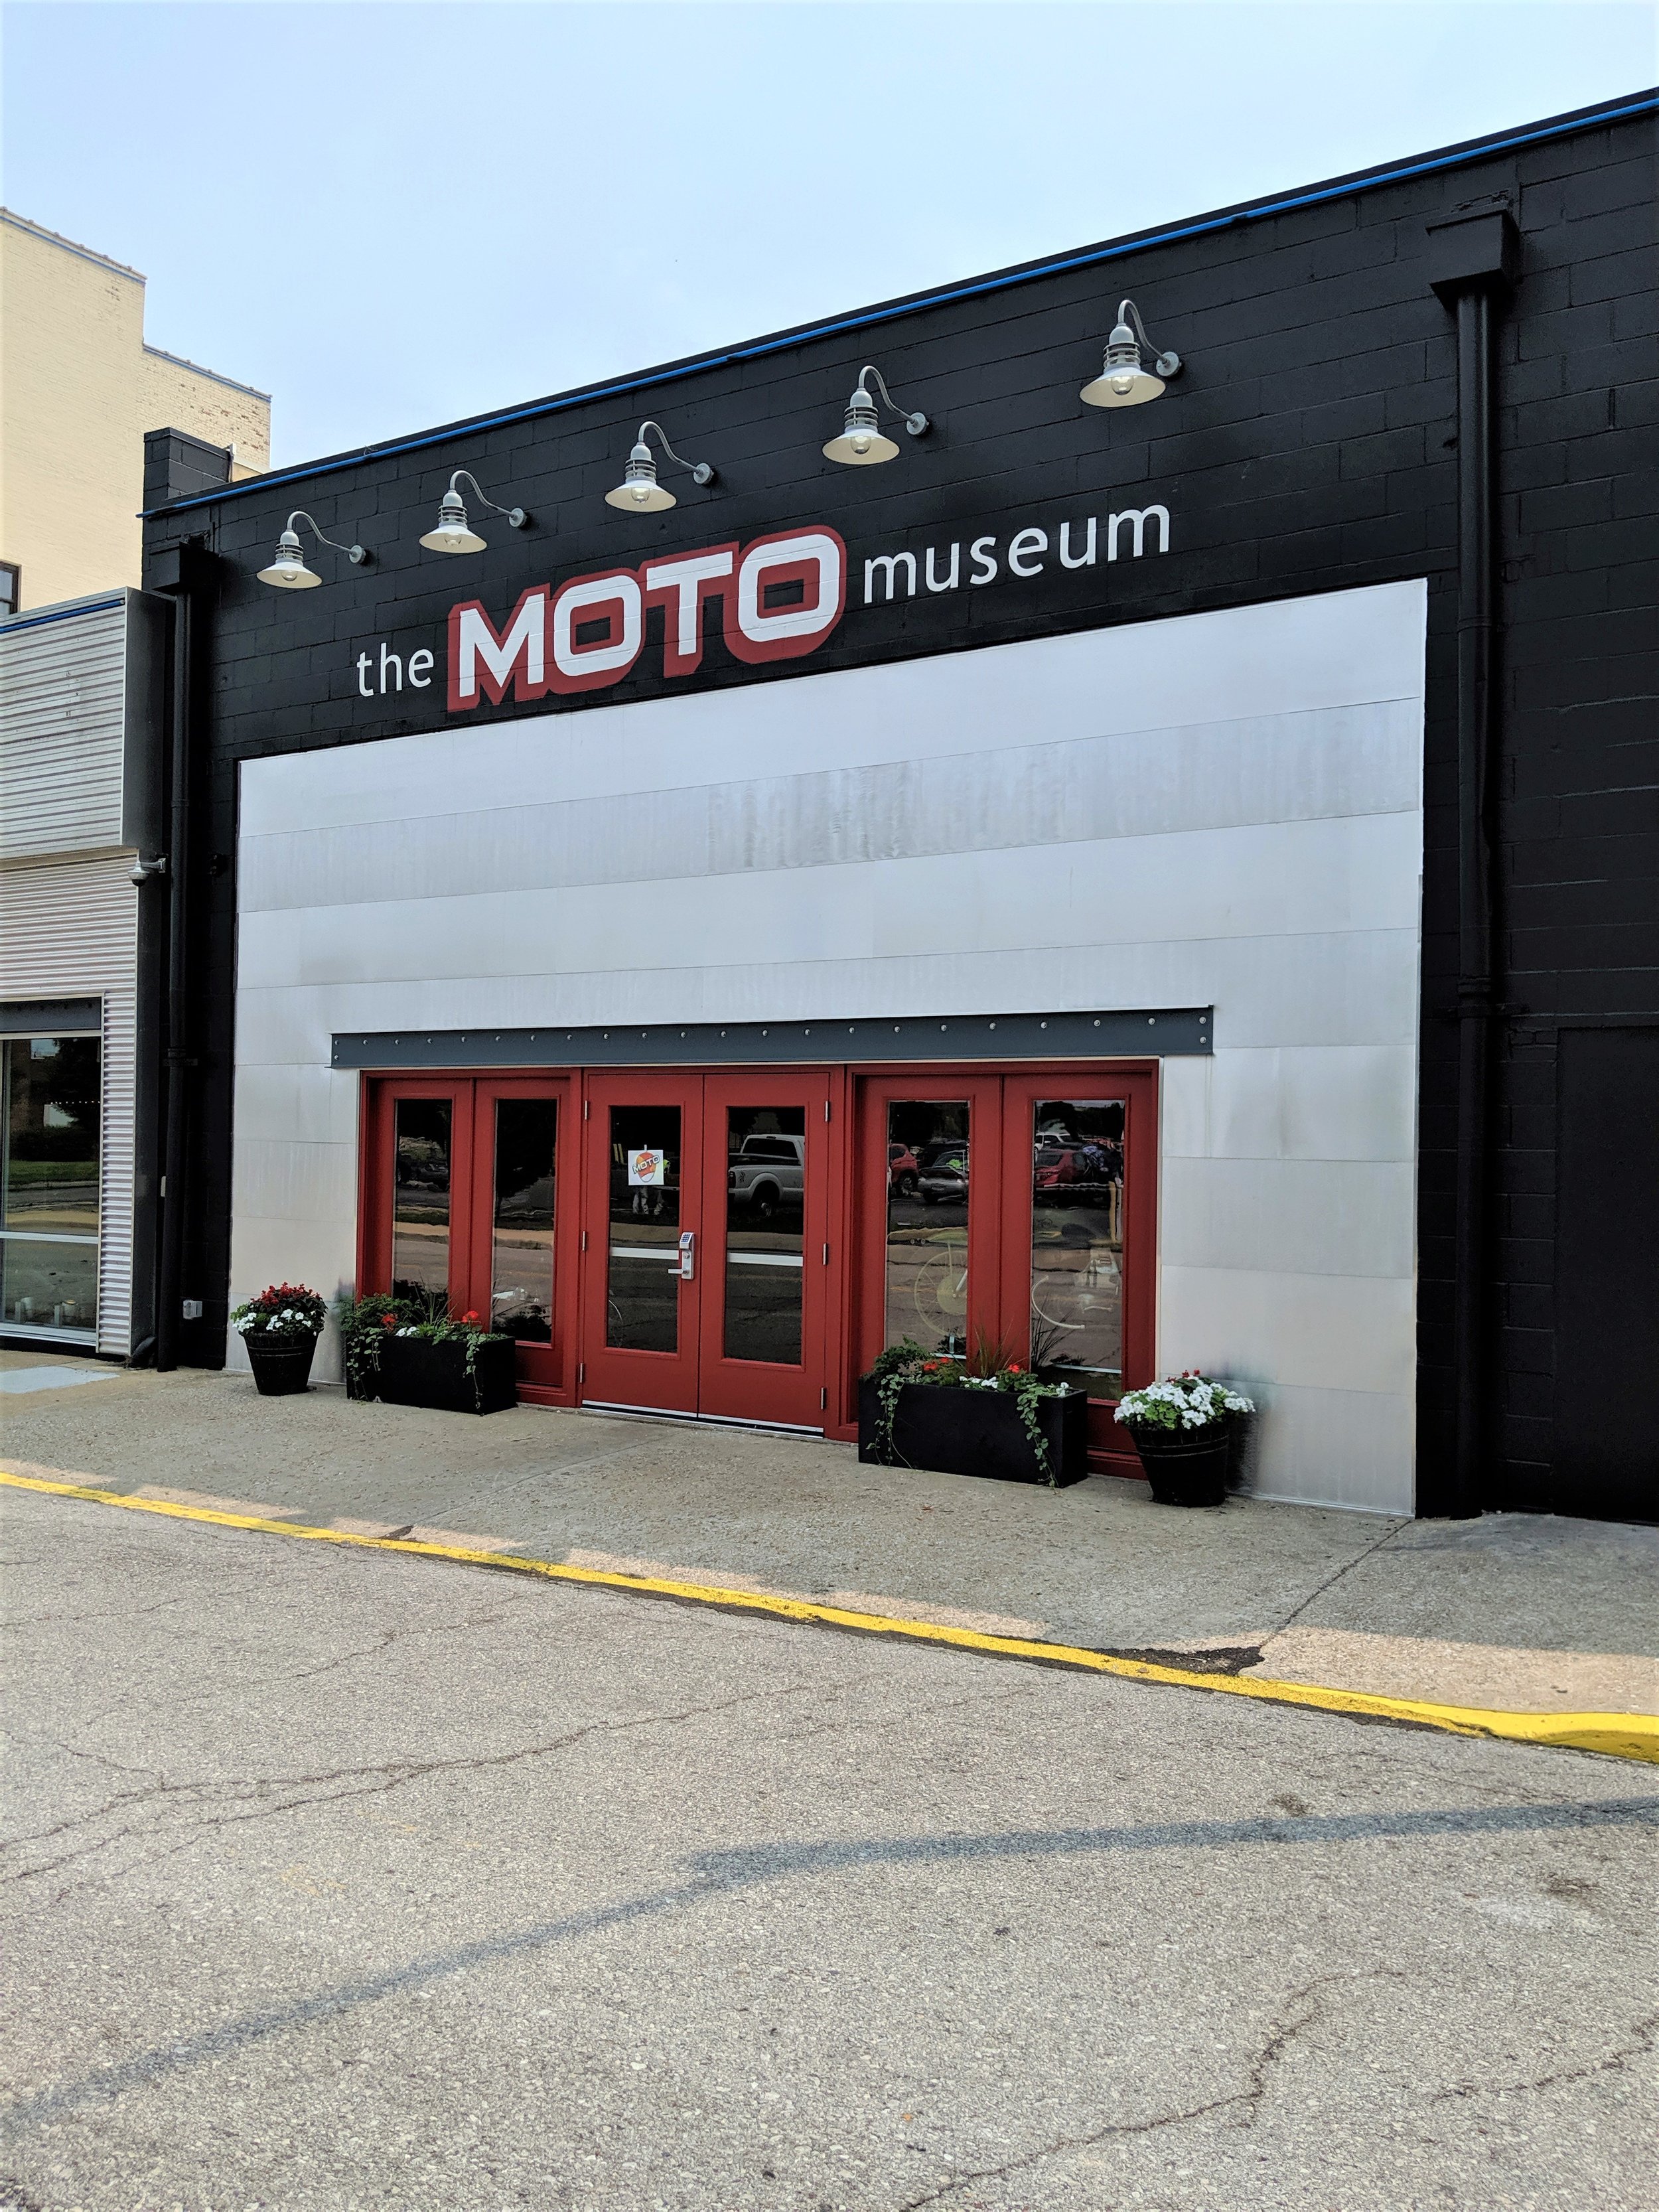 The MOTO museum